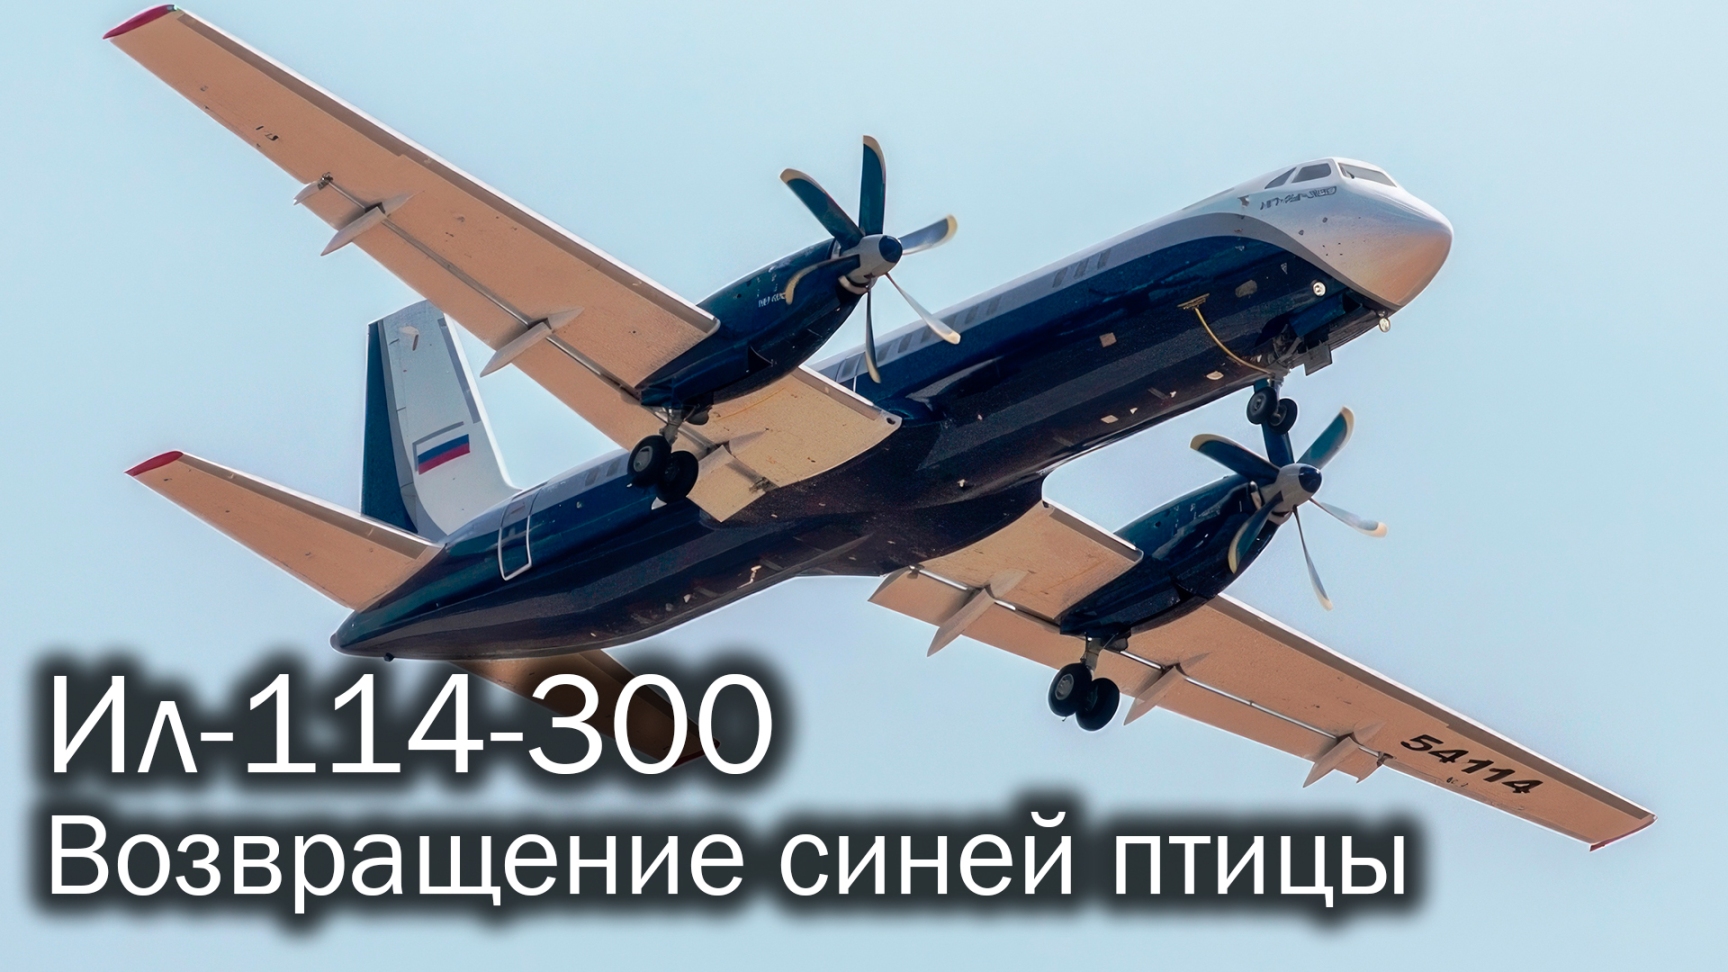 Ил-114-300 - старый-новый регионал